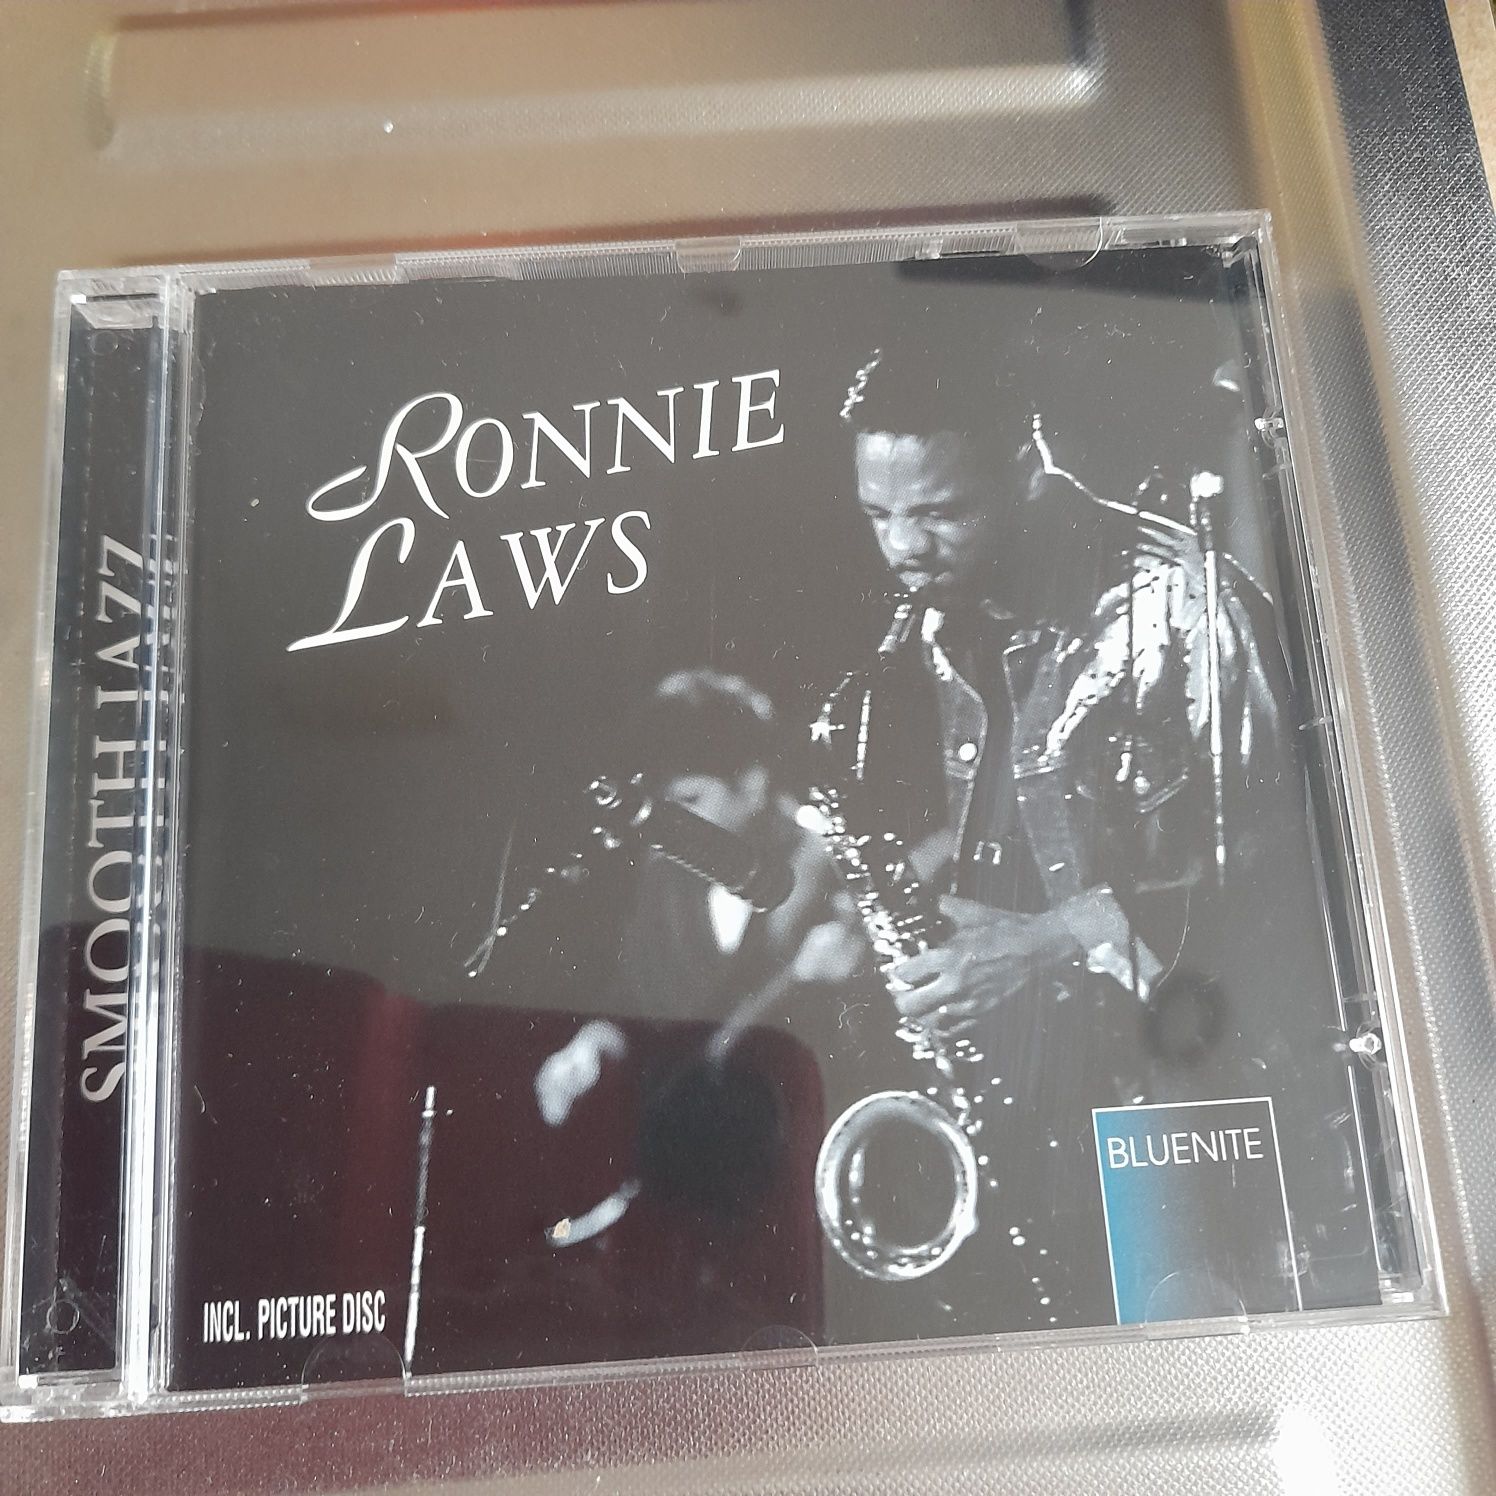 Płyta CD Lonnie Laws